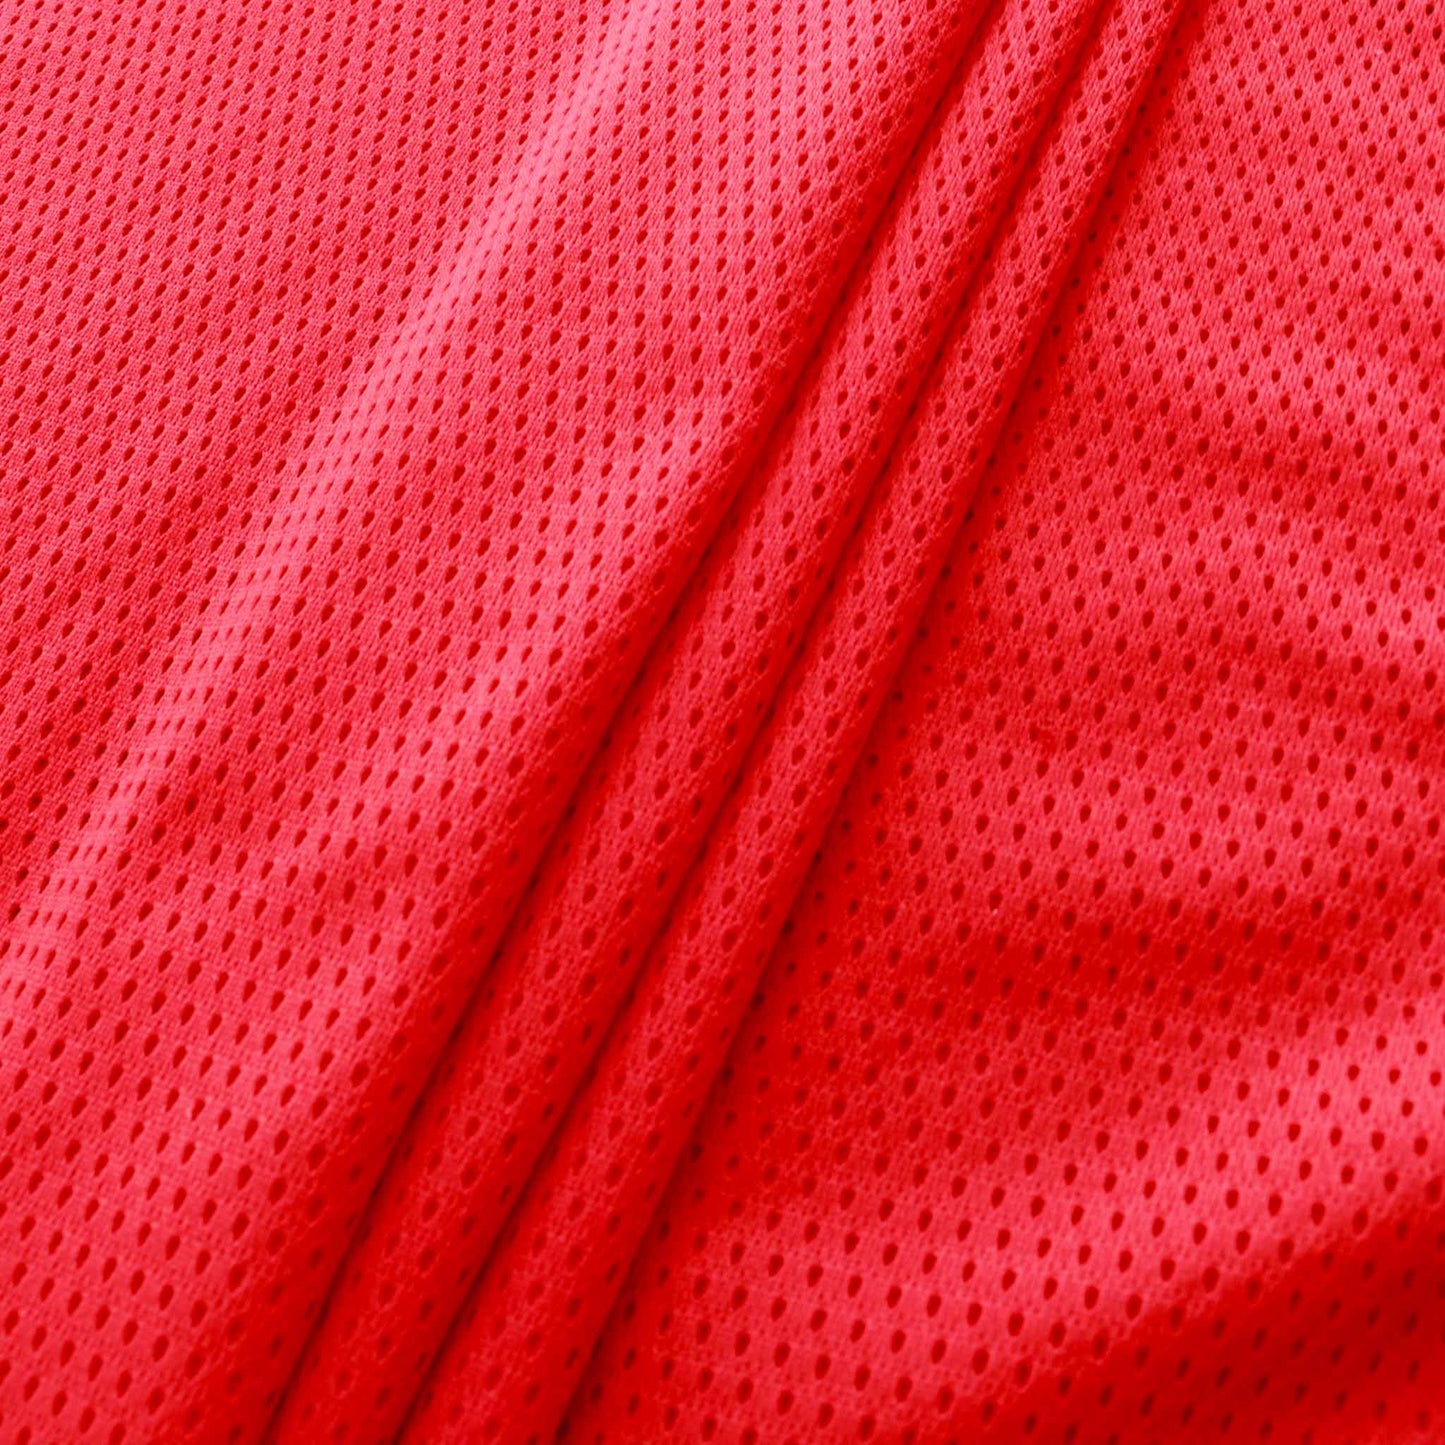 airtex mesh sports fabric in red colour